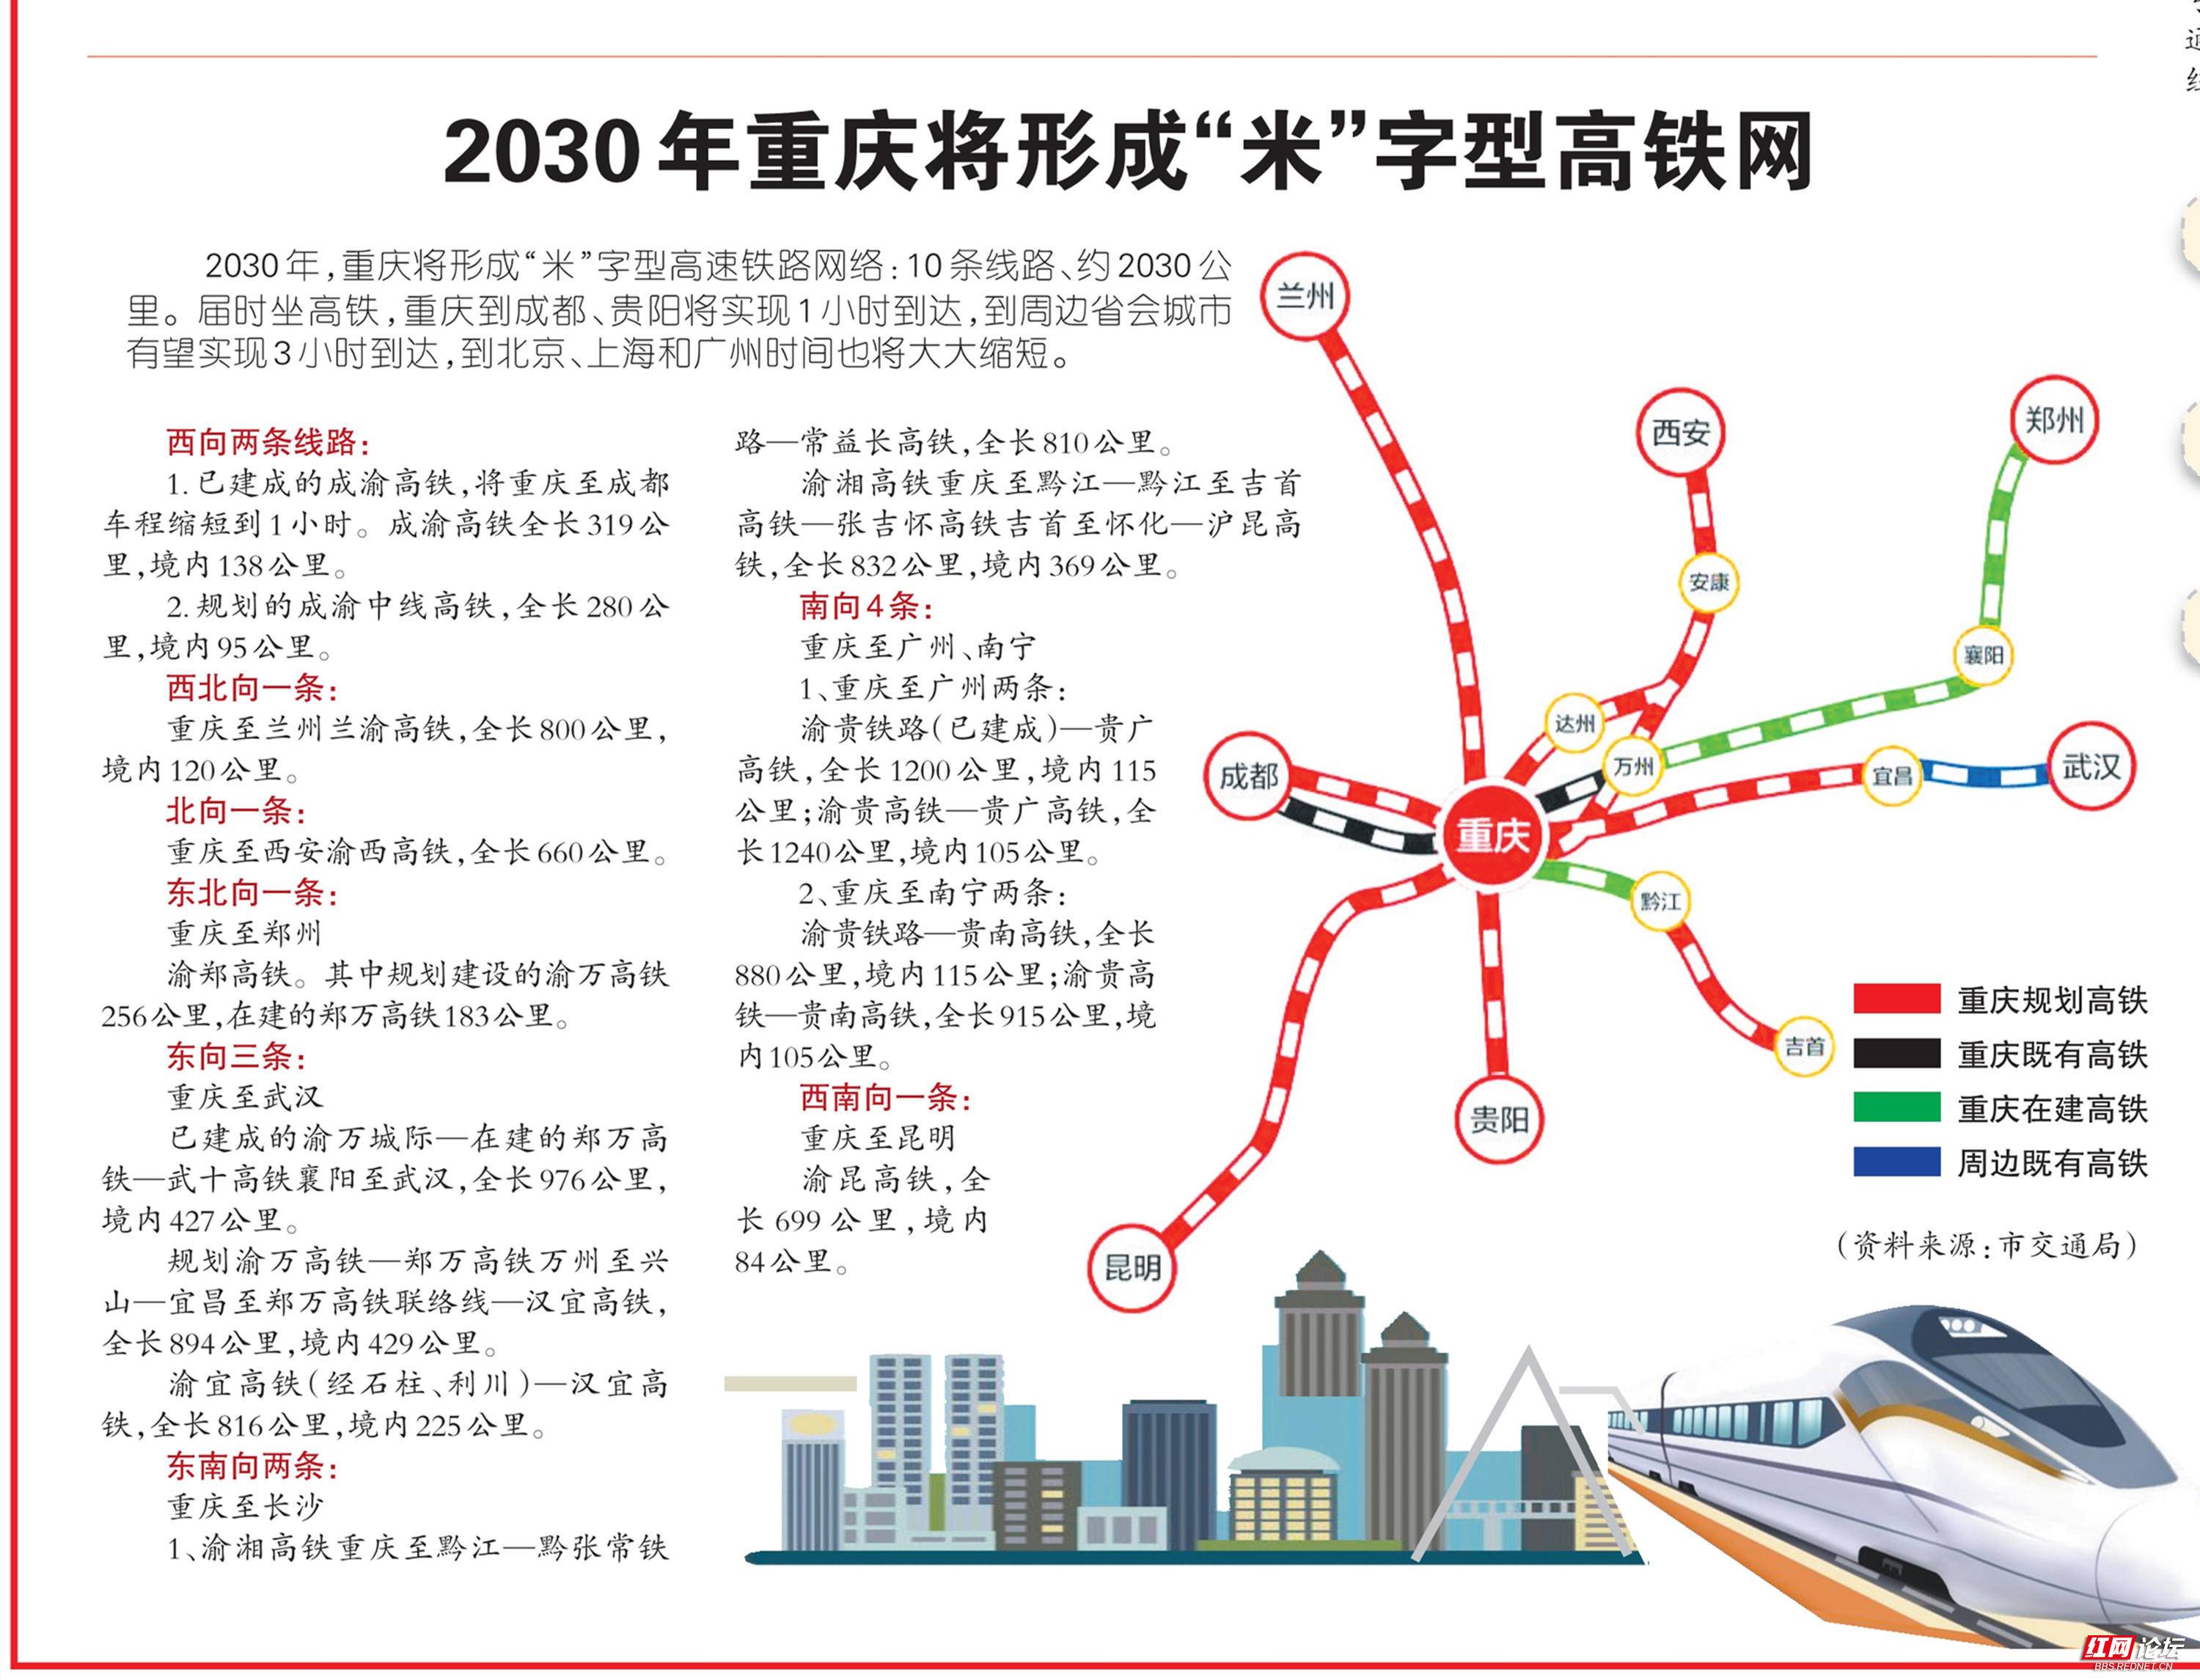 2030年重庆将形成"米"字型高铁网